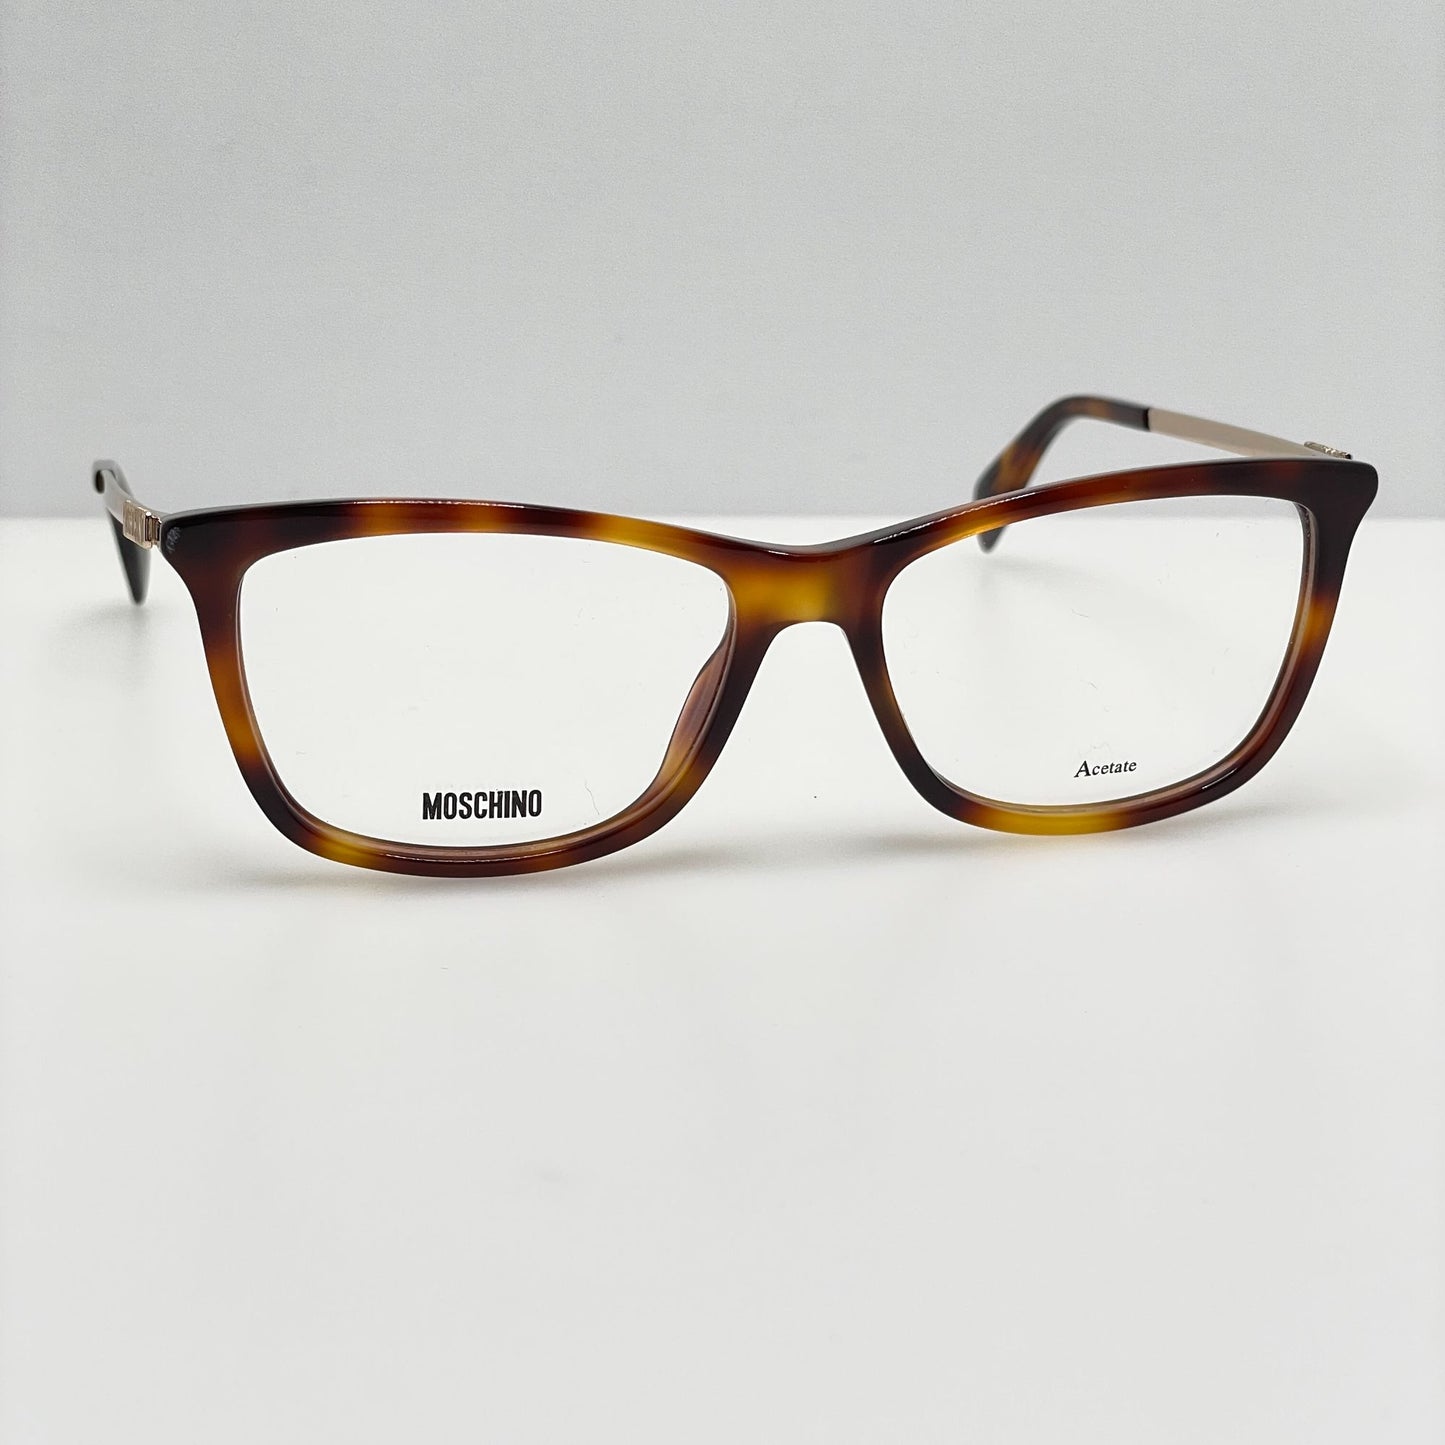 Moschino Eye Glasses Eyeglasses Frames MOS522 086 52-15-140